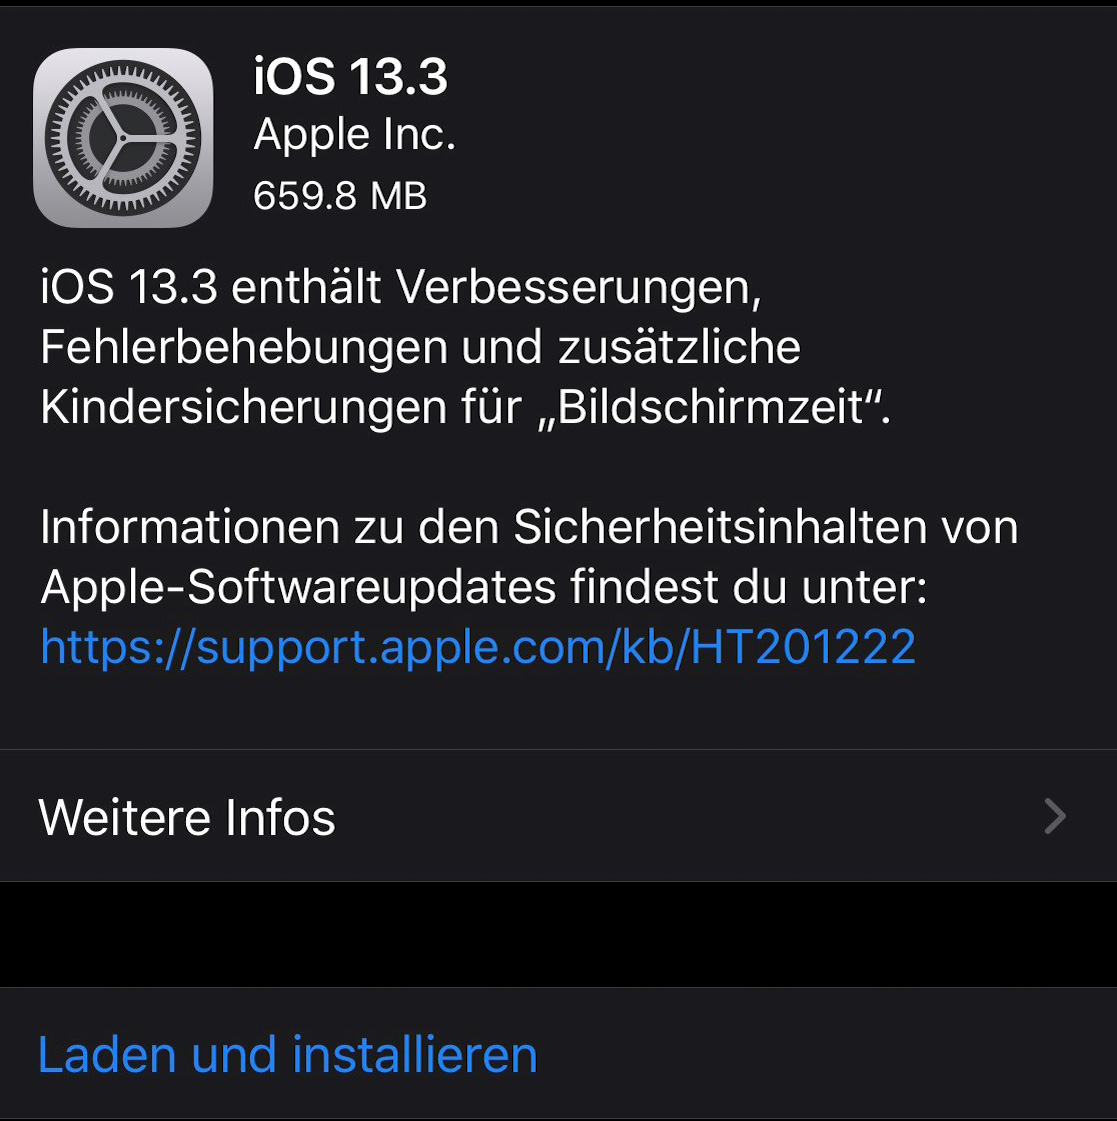 iOS 13.3 bringt nebst Fehlerbehebungen auch neue Funktionen